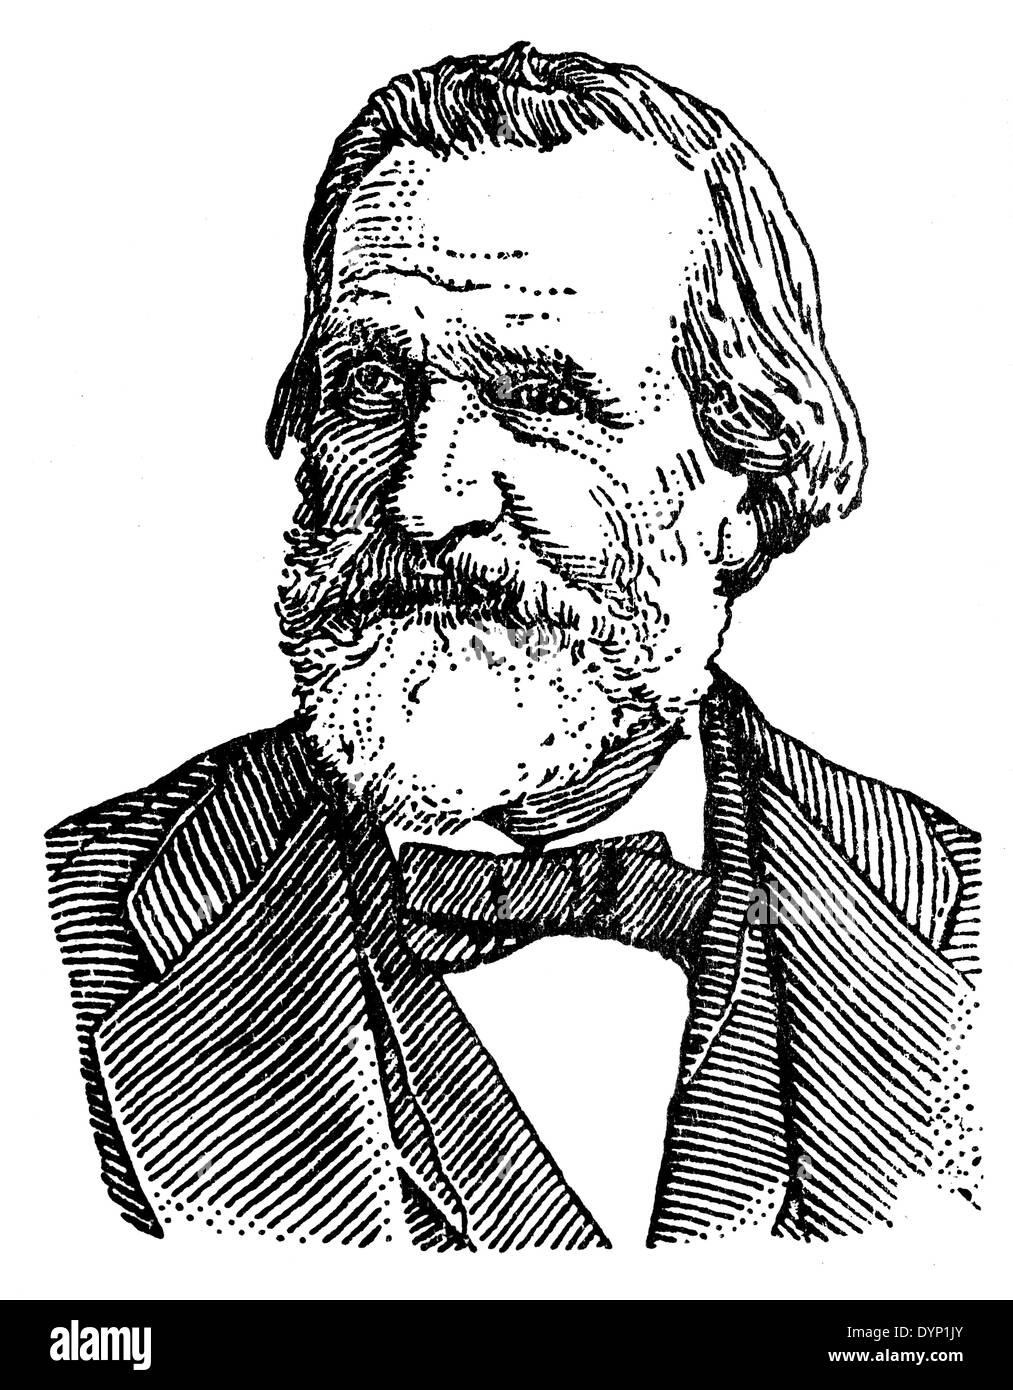 Giuseppe Verdi (1813-1901), compositeur romantique italien, illustration de l'Encyclopédie Soviétique, 1928 Banque D'Images